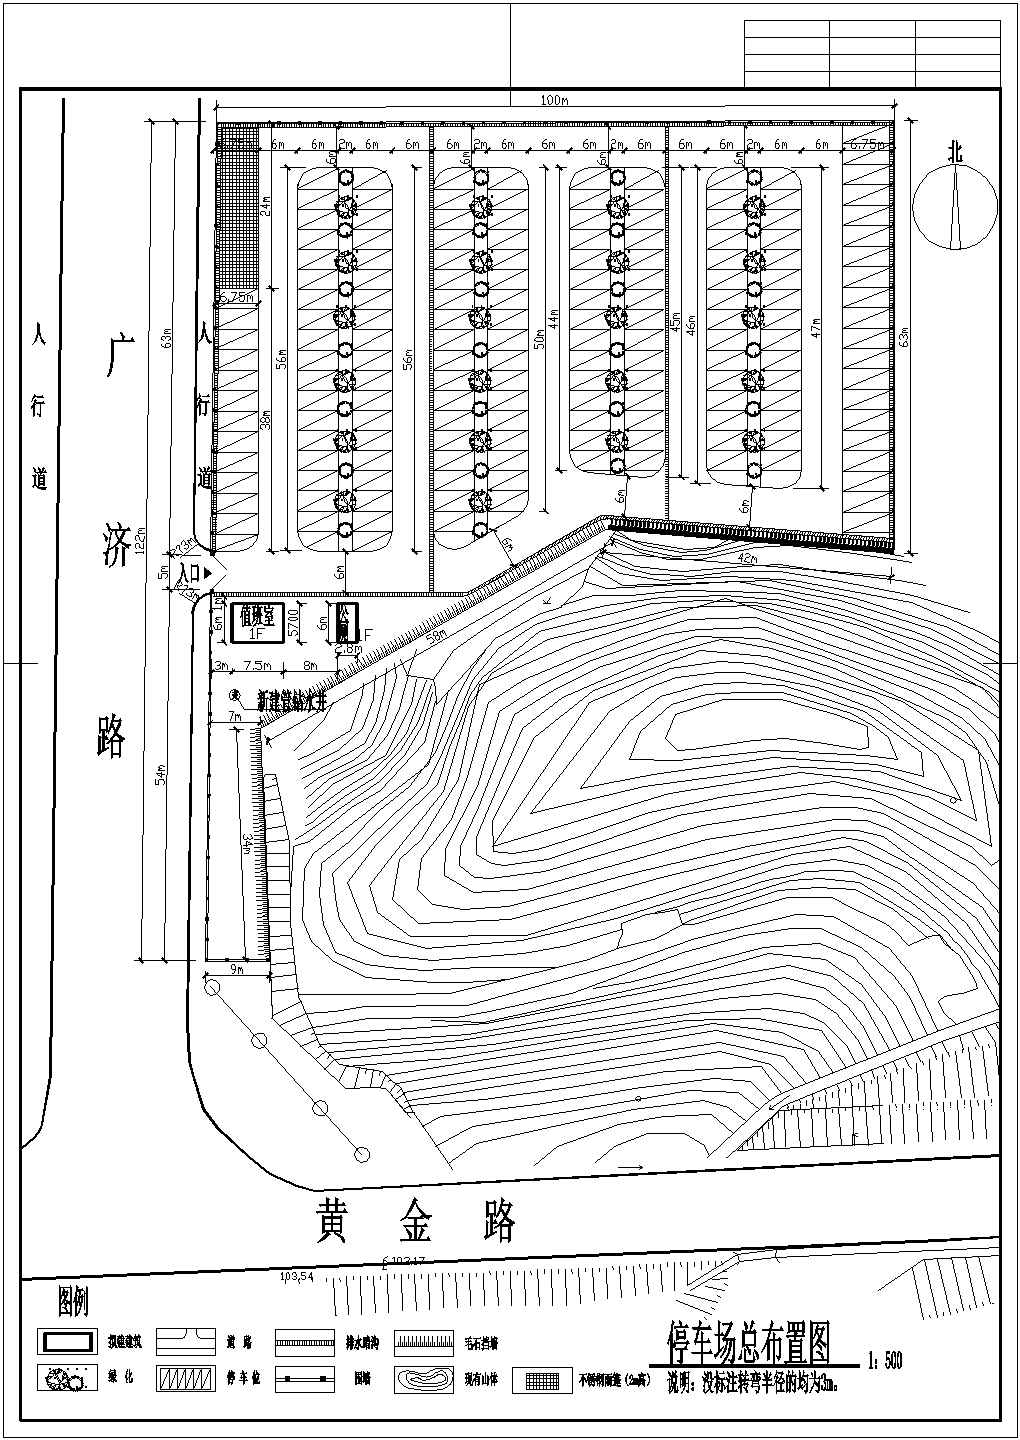 一个小型停车场规划布置图及施工详图